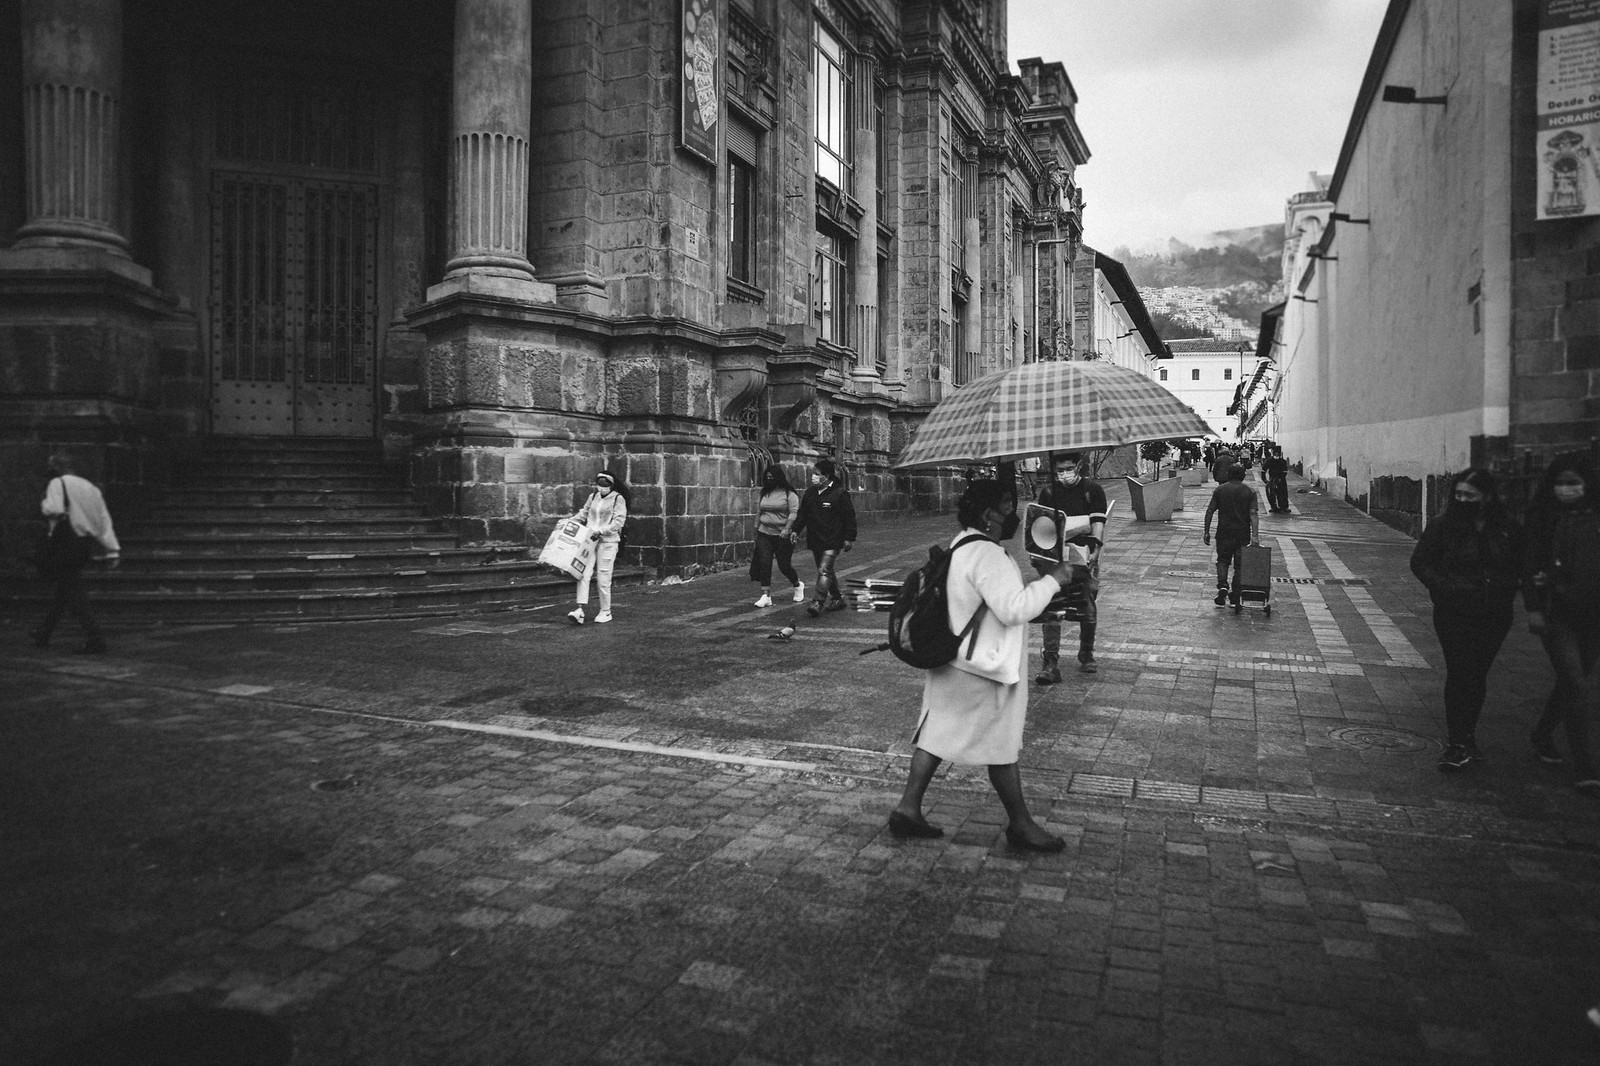 Instantes en Quito - Señora con sombrilla sobre calle empedrada